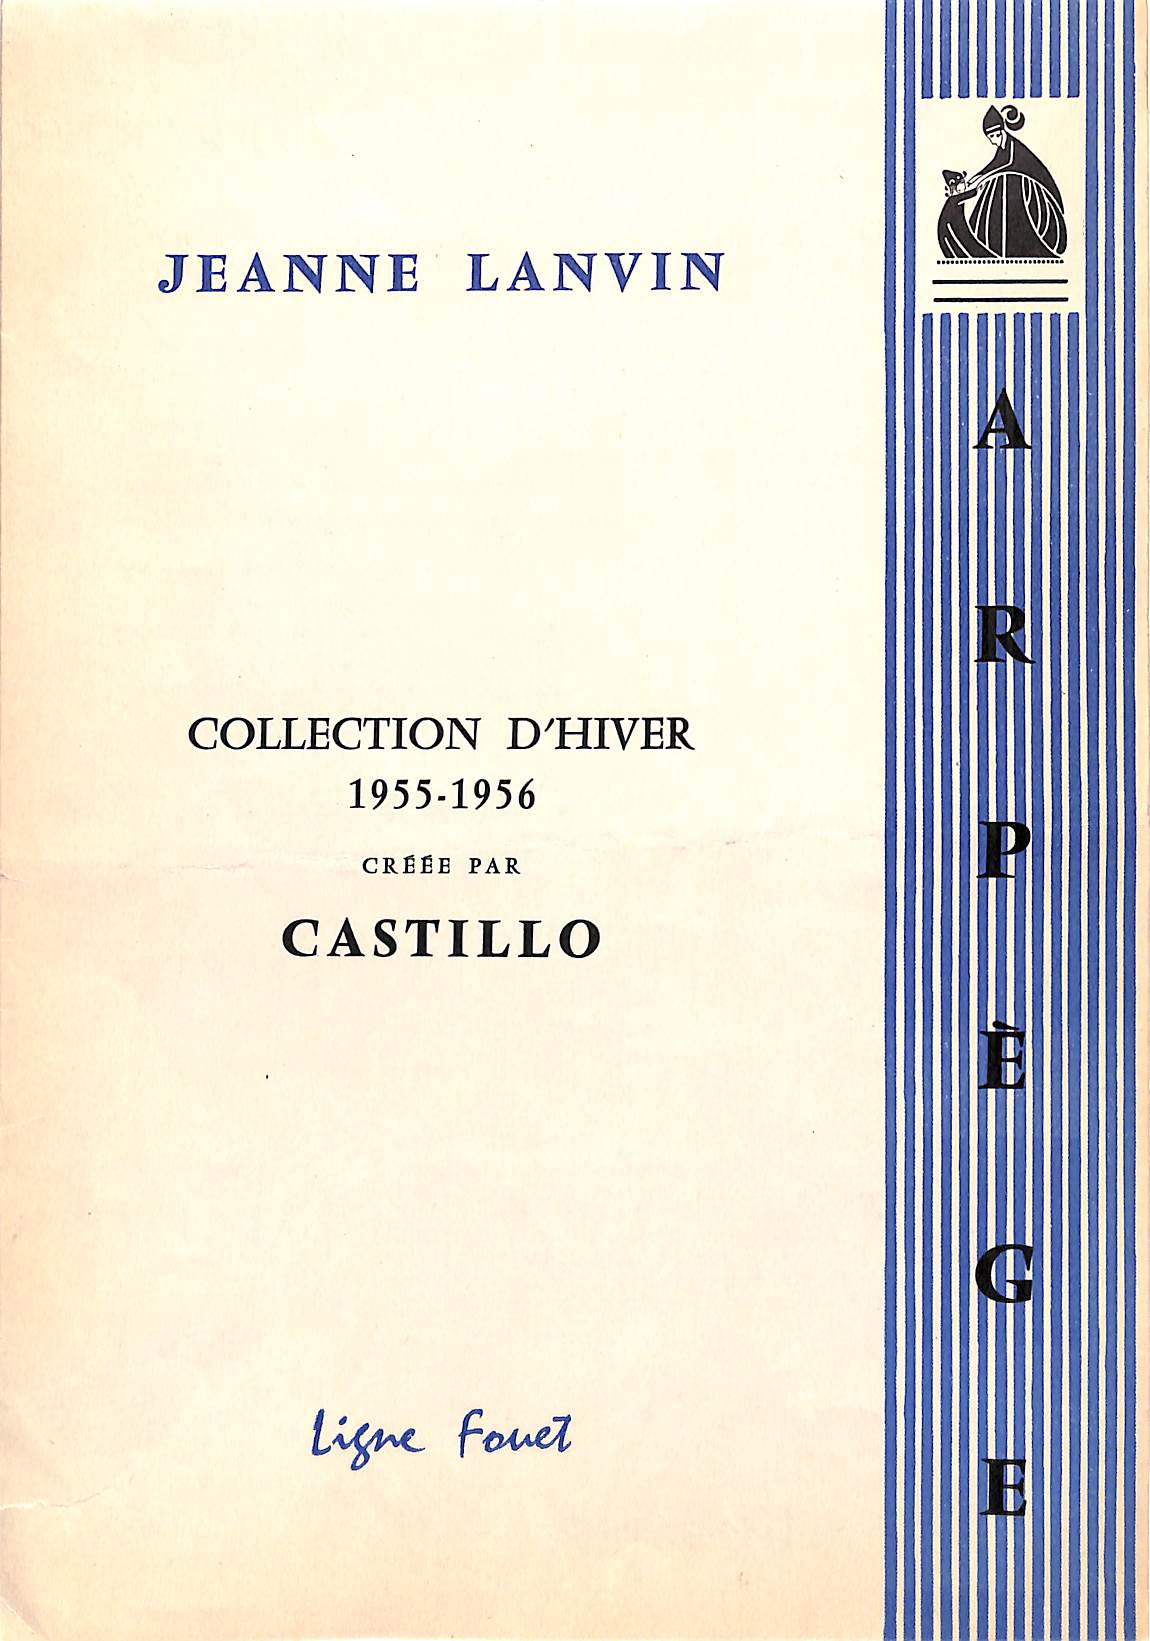 Arpege by Jeanne Lanvin: Collection d'Hiver 1955-1956 Creee Par Castillo